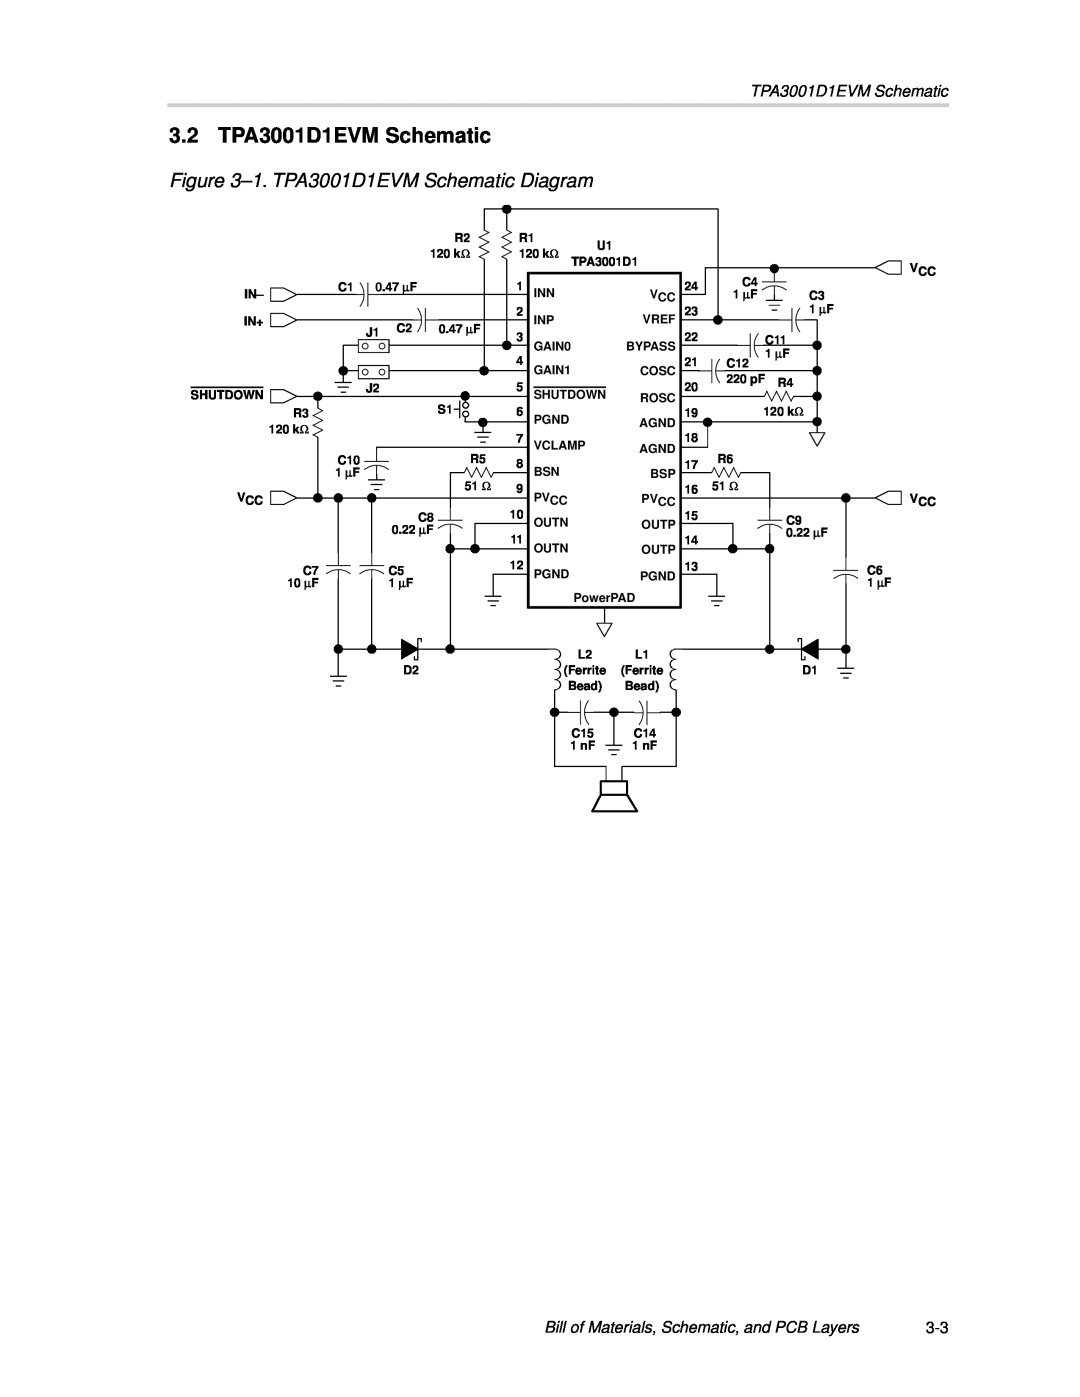 Texas Instruments manual 3.2 TPA3001D1EVM Schematic, 1.TPA3001D1EVM Schematic Diagram 